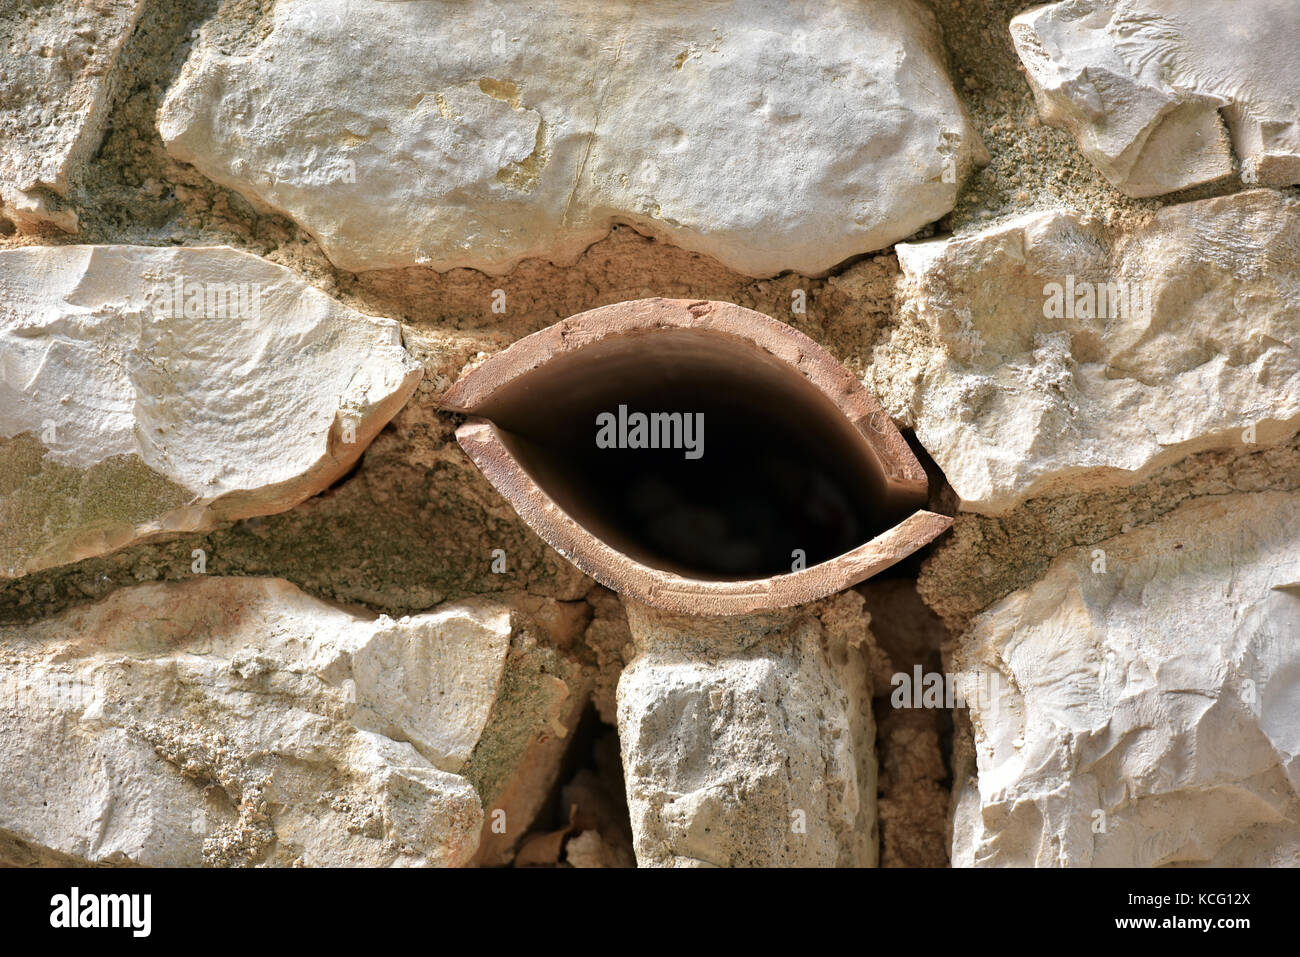 Un tuyau de drainage dans un mur de pierre à la forme d'une paire de lèvres ou une bouche.Les matériaux de construction, d'humour et drôles de formes. Banque D'Images